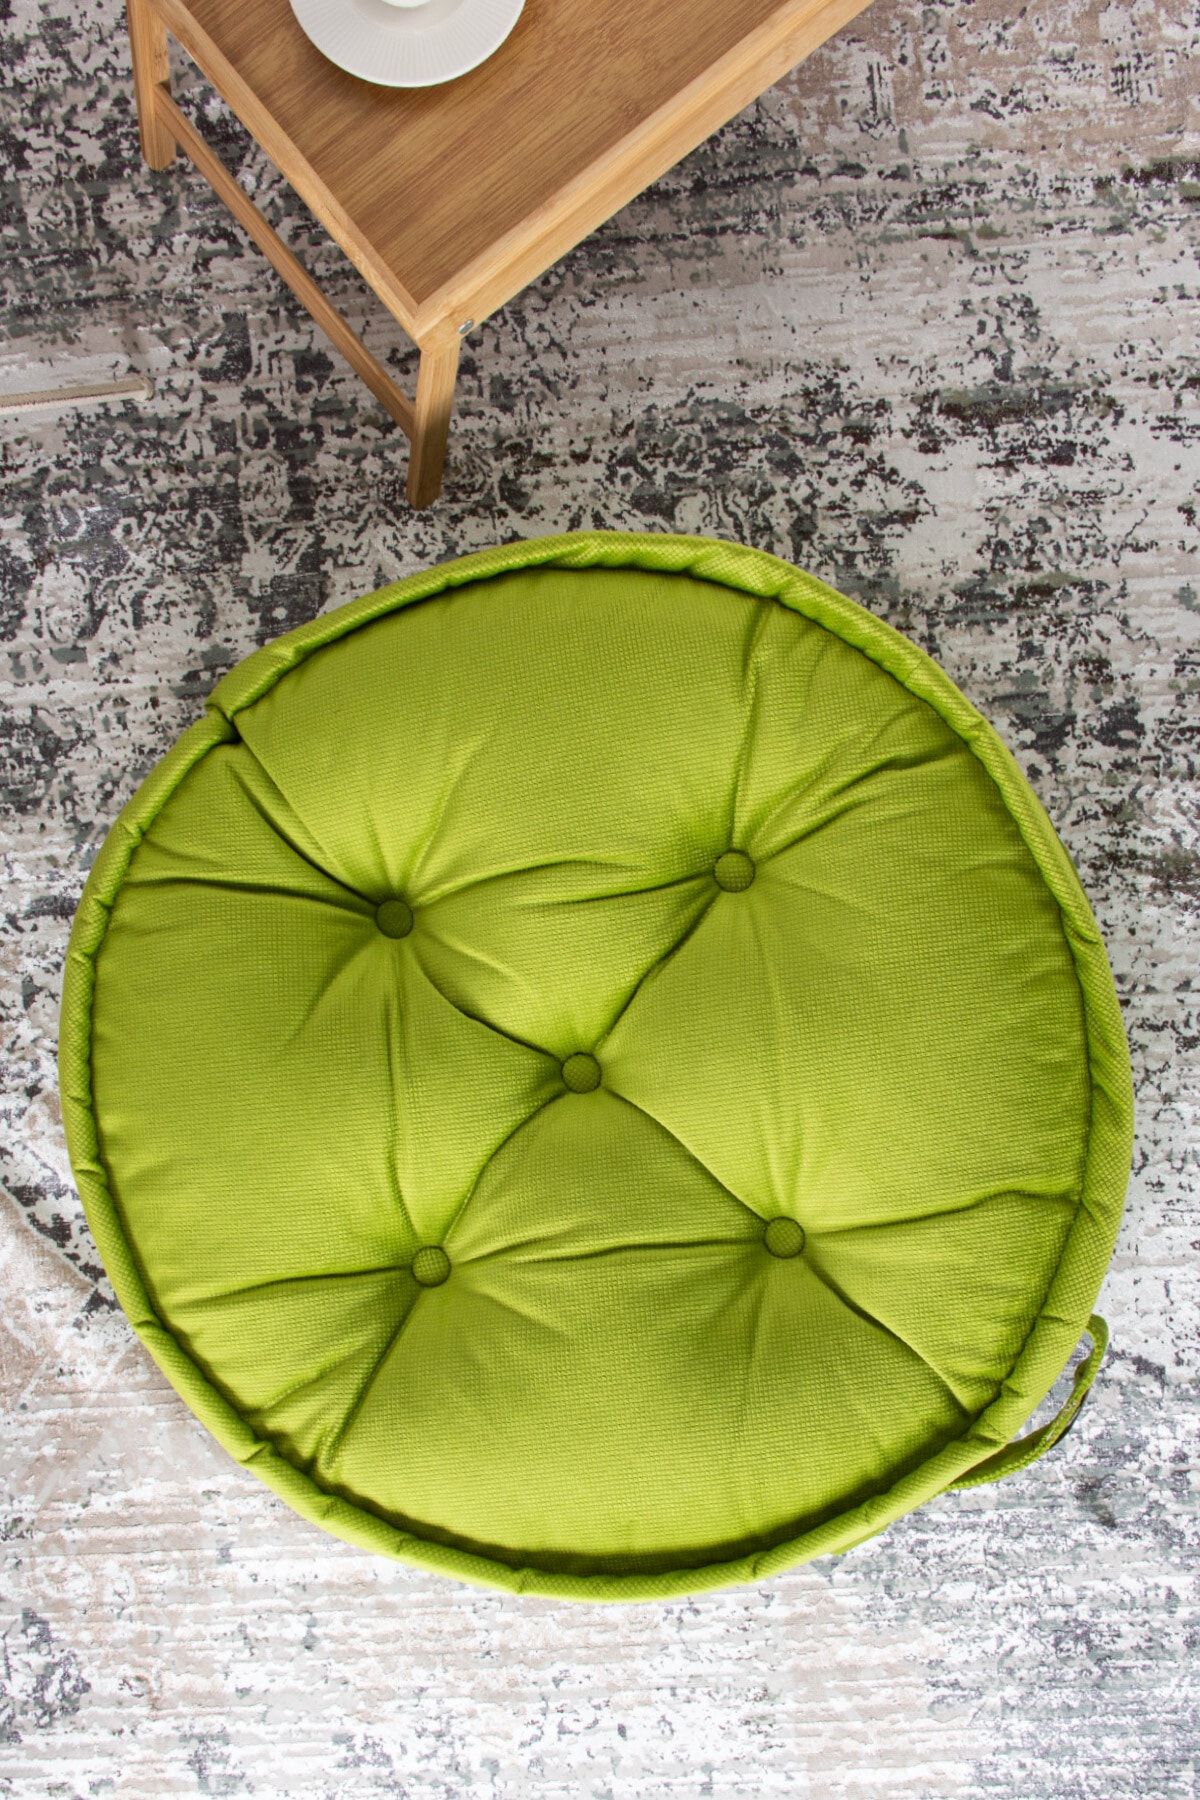 Homedius Asia Kadife Yuvarlak Dekoratif Minder Fıstık Yeşili  60x60 cm